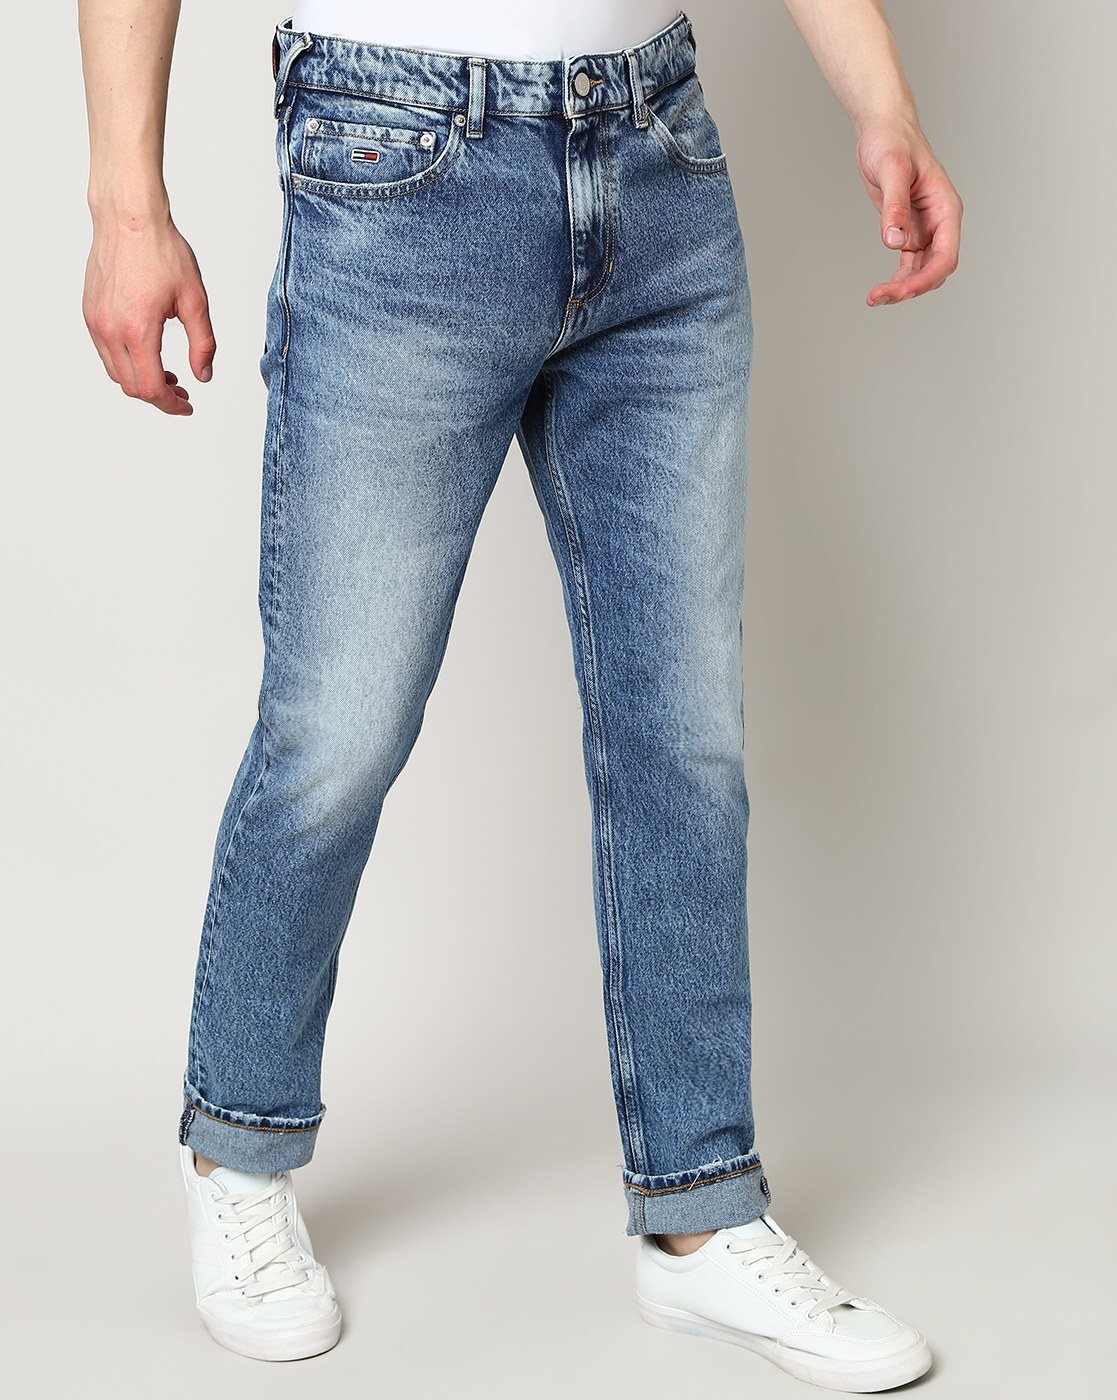 Buy Denim 02 Men TOMMY Online for Jeans Medium by HILFIGER